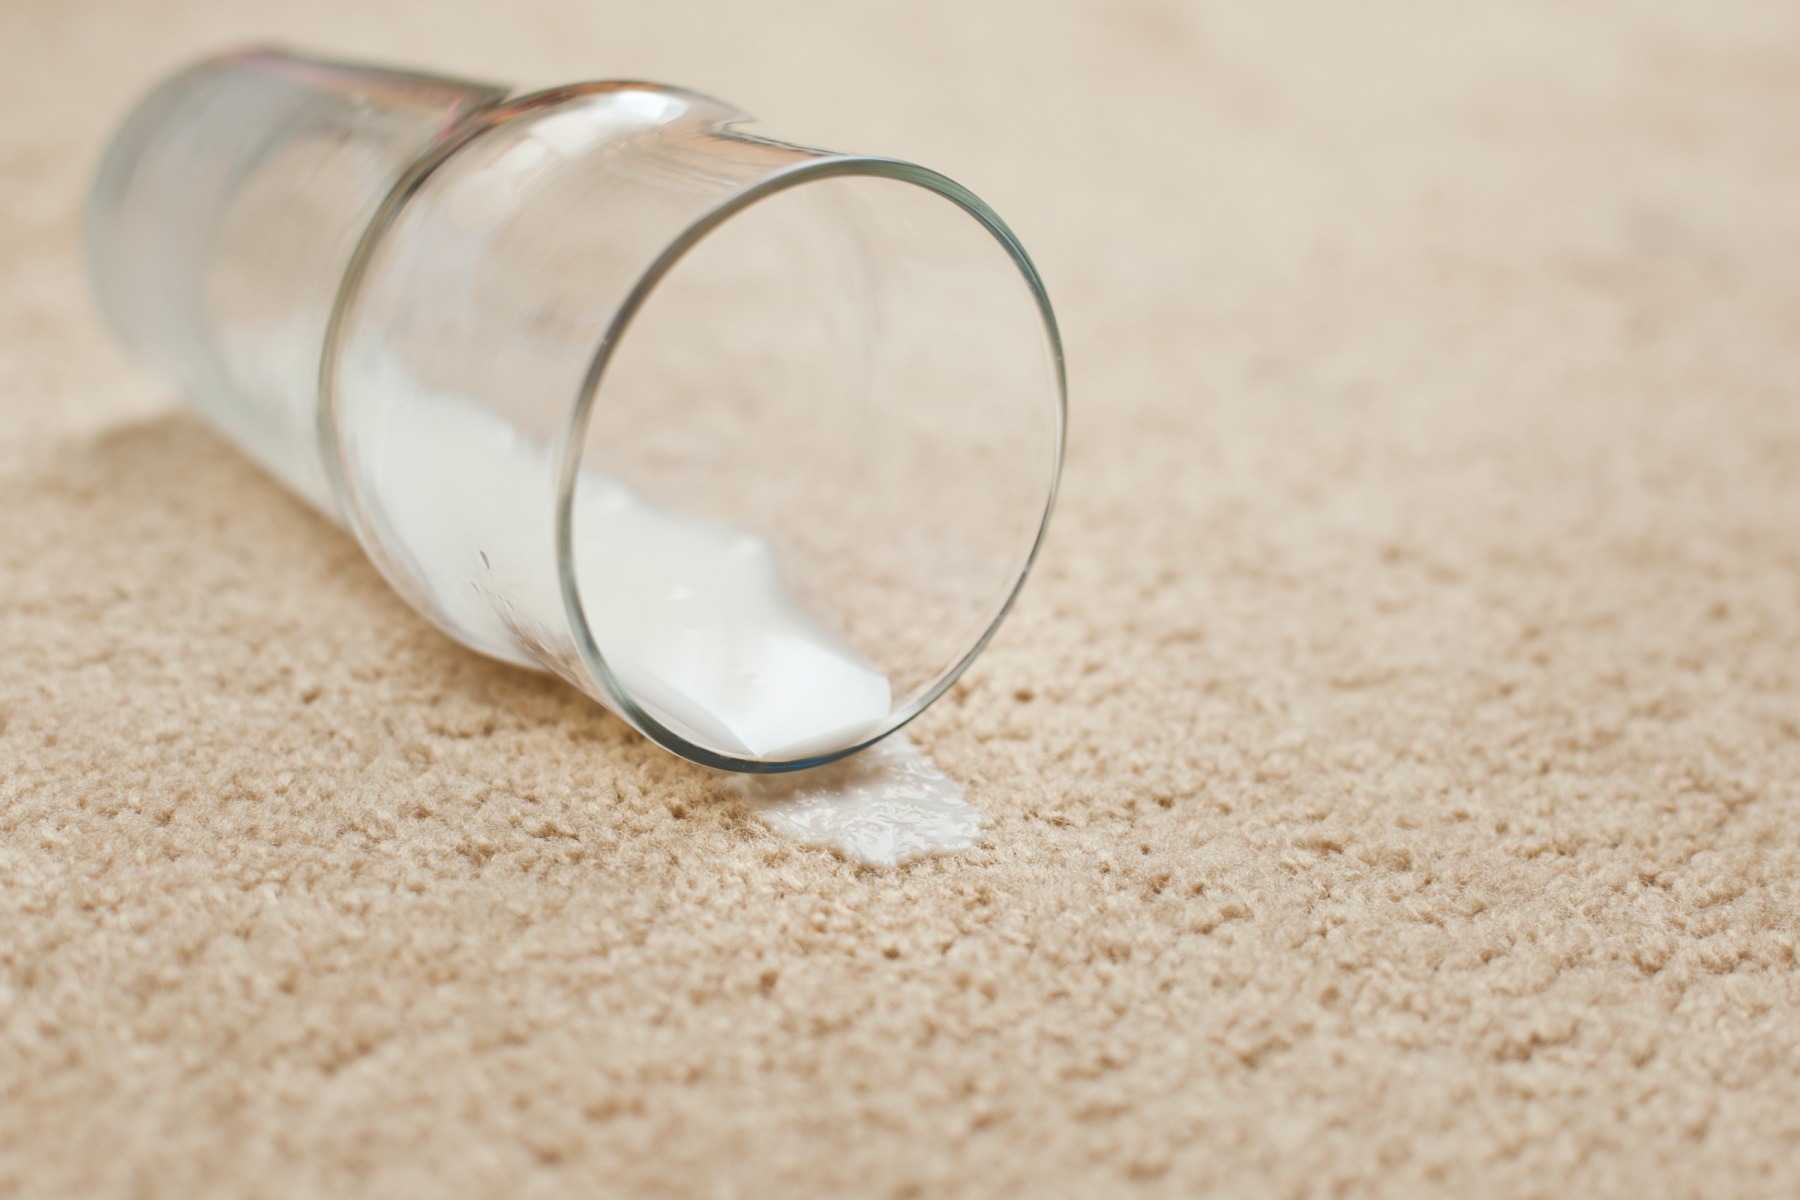  رفع لک شیر از روی فرش